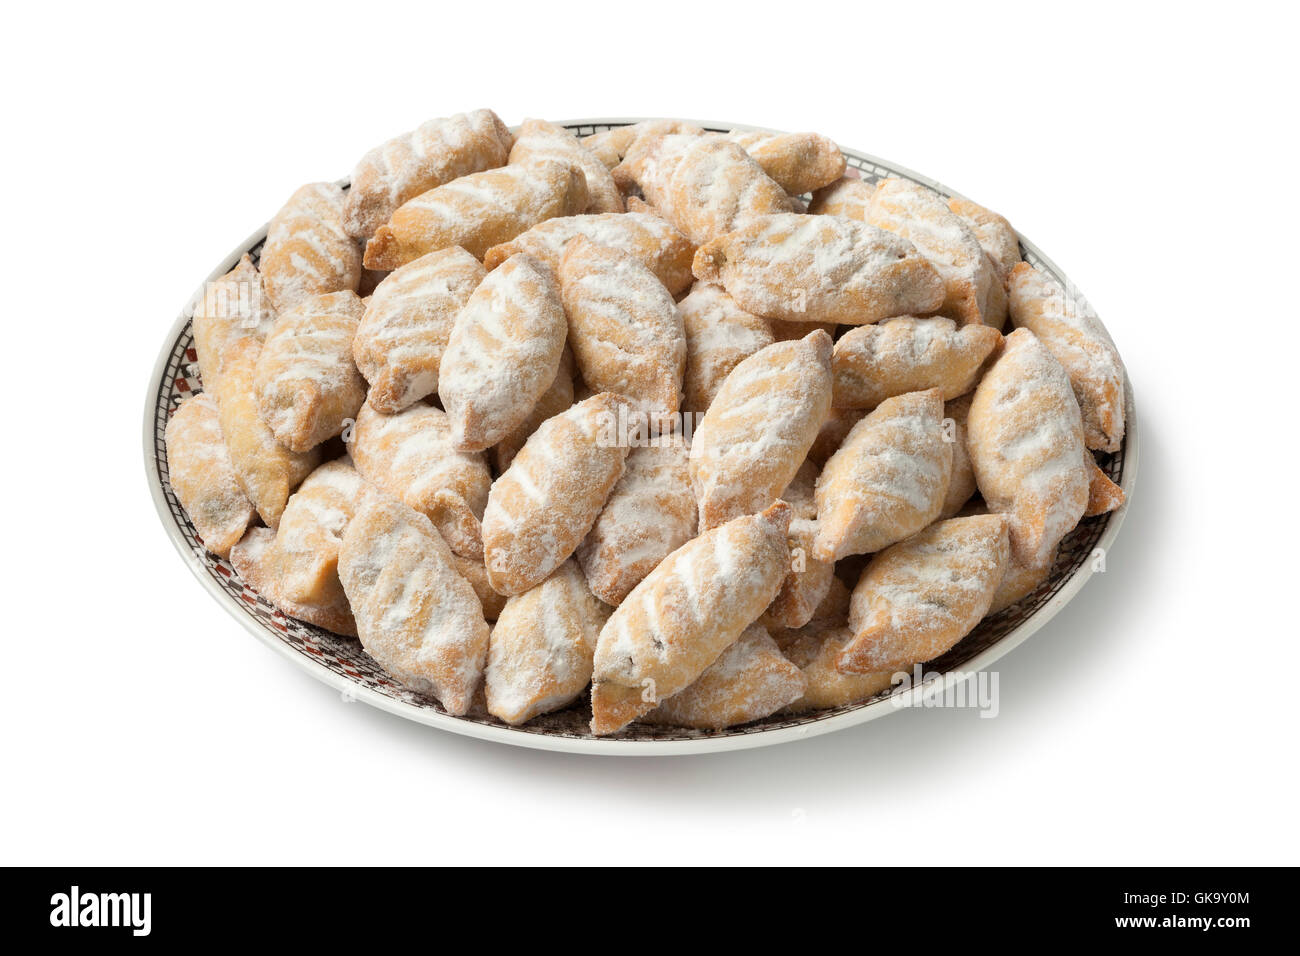 Plat d'une cuisine marocaine makrout, date des cookies, sur fond blanc Banque D'Images